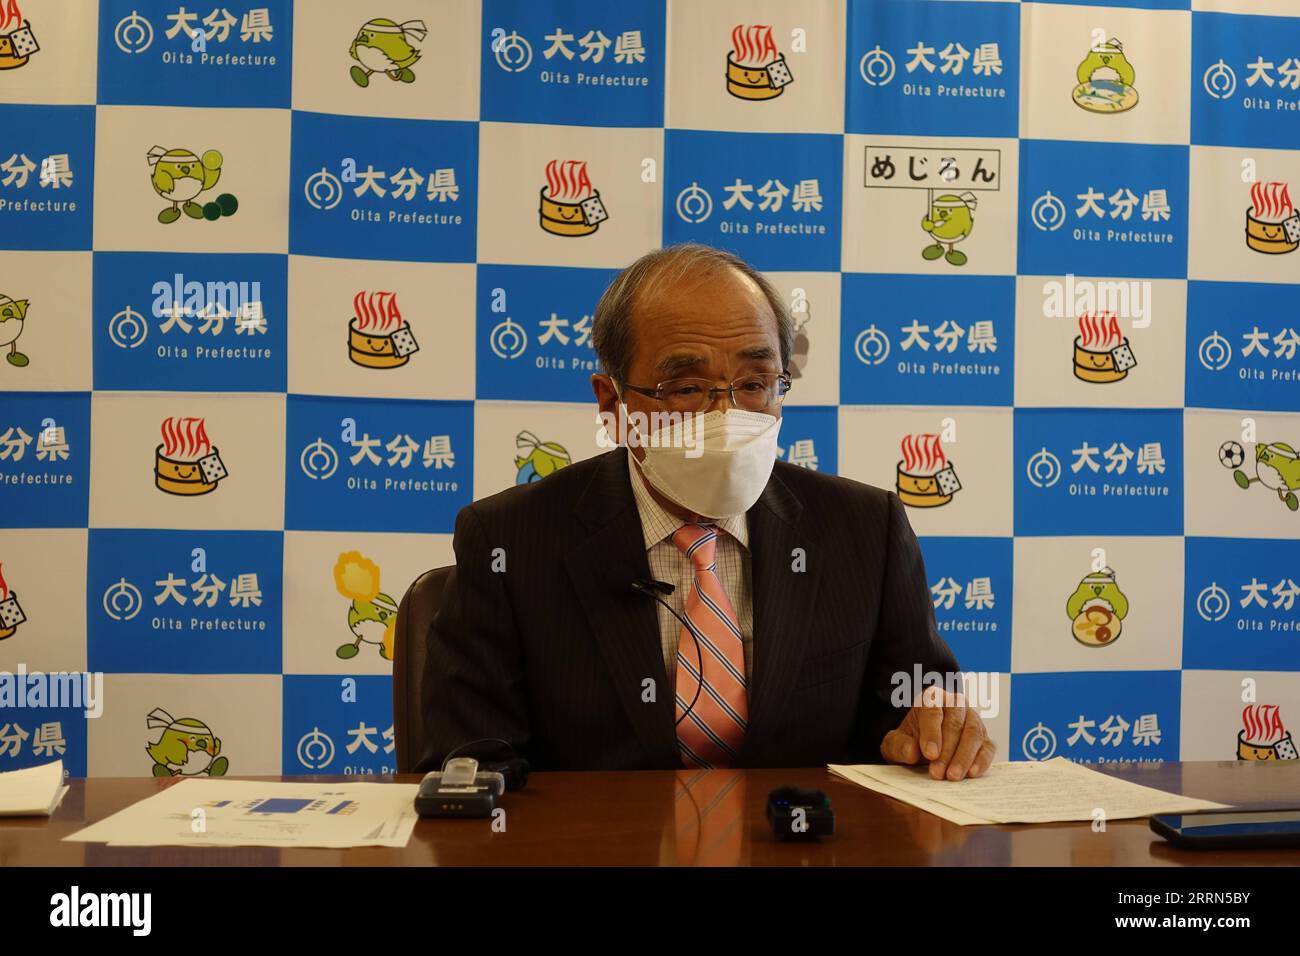 221212 -- OITA, 12 dicembre 2022 -- Katsusada Hirose, governatore della prefettura di Oita in Giappone, parla durante una conferenza stampa nella prefettura di Oita, in Giappone, 8 dicembre 2022. La prefettura giapponese di Oita di sorgenti termali calde sta andando avanti a pieno ritmo nello sviluppo dell'energia geotermica, in quanto il paese mira a diventare neutrale dal punto di vista delle emissioni di carbonio entro il 2050. PER ANDARE CON Economic Watch: La prefettura di sorgenti termali calde del Giappone scommette molto sull'energia geotermica GIAPPONE-OITA-ENERGIA GEOTERMICA ZhangxYiyi PUBLICATIONxNOTxINxCHN Foto Stock